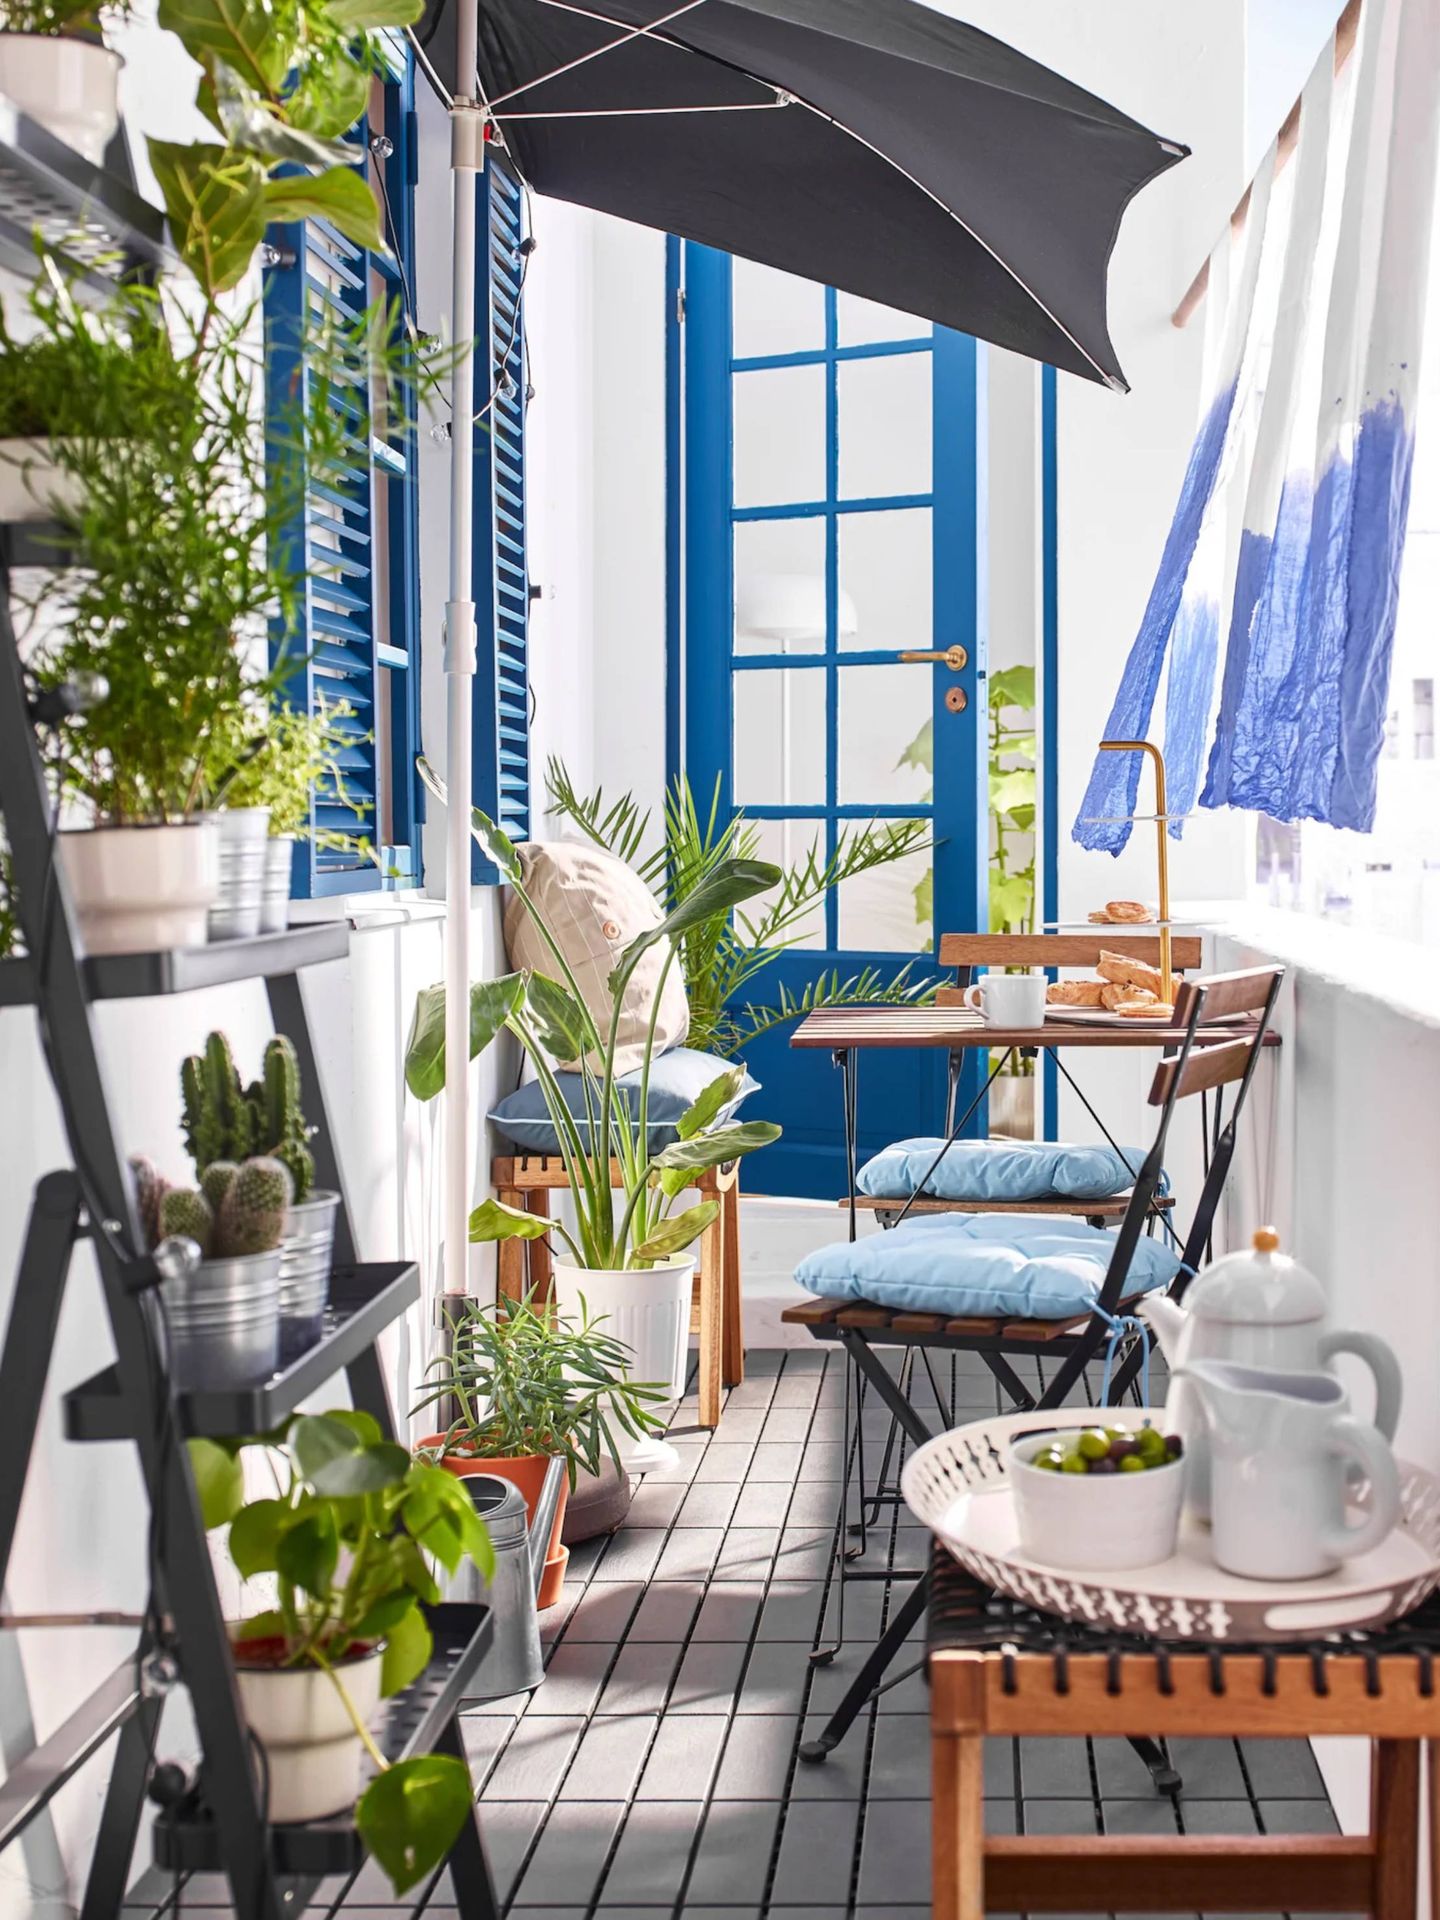 Ikea decora tu balcón aunque sea estrecho. (Cortesía)